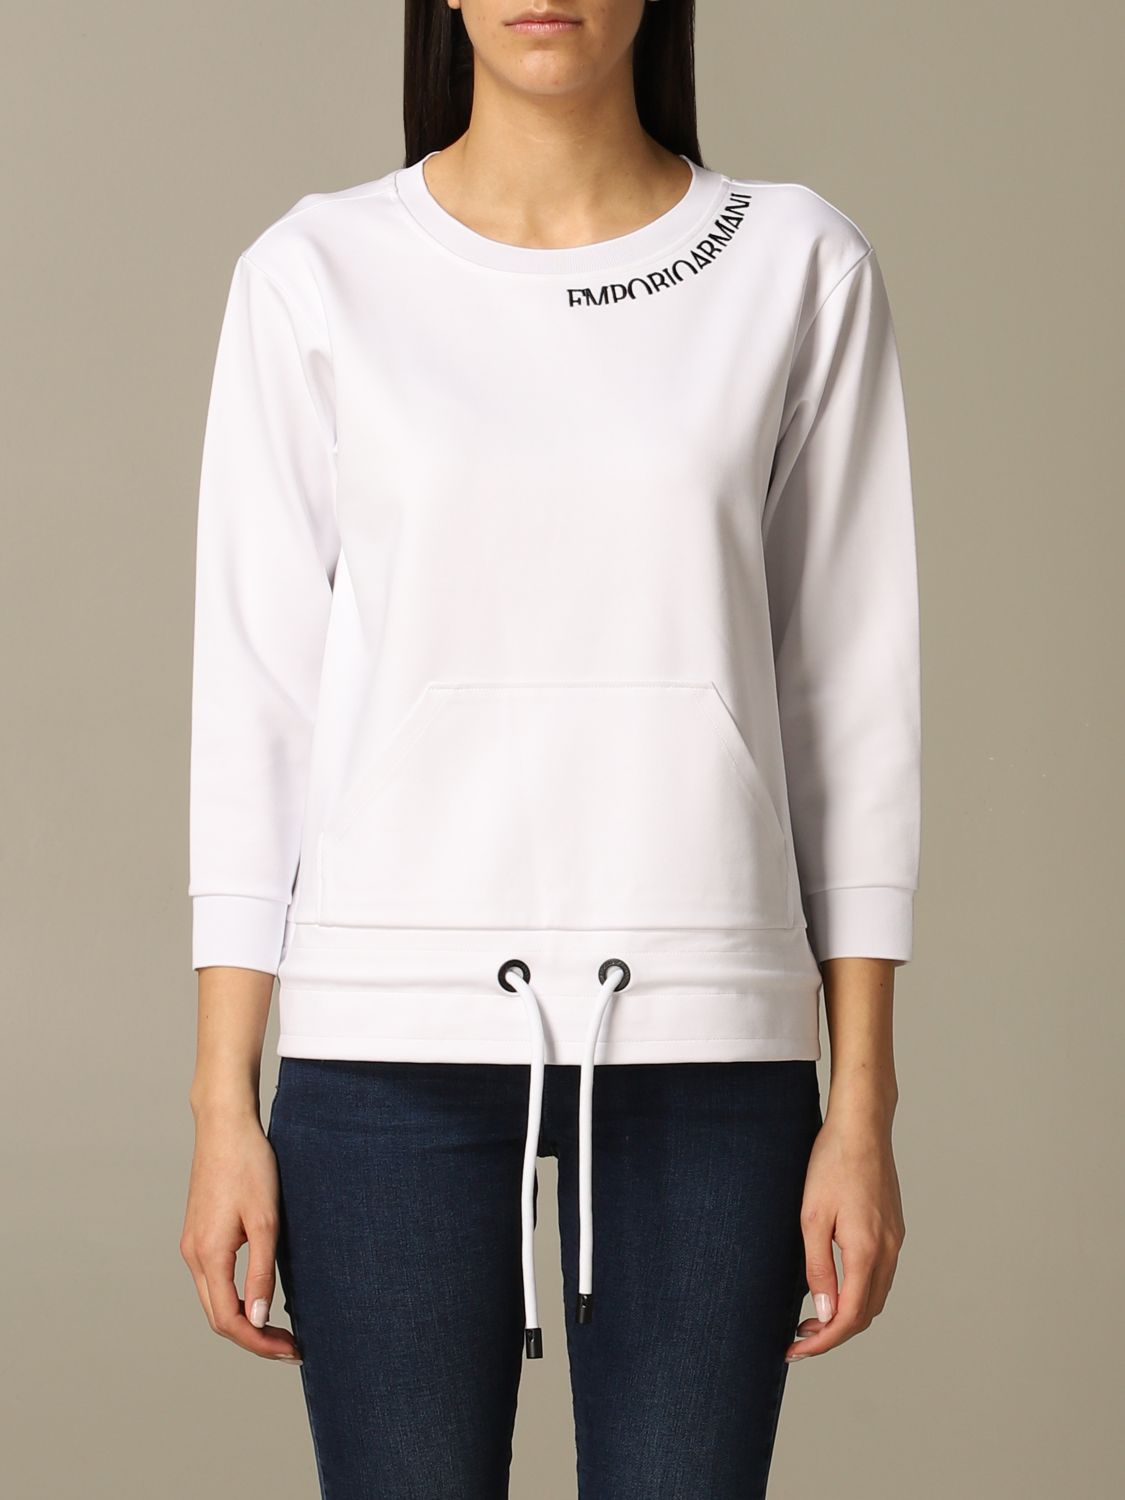 Emporio Armani Outlet: Sweater women - White | Sweatshirt Emporio ...